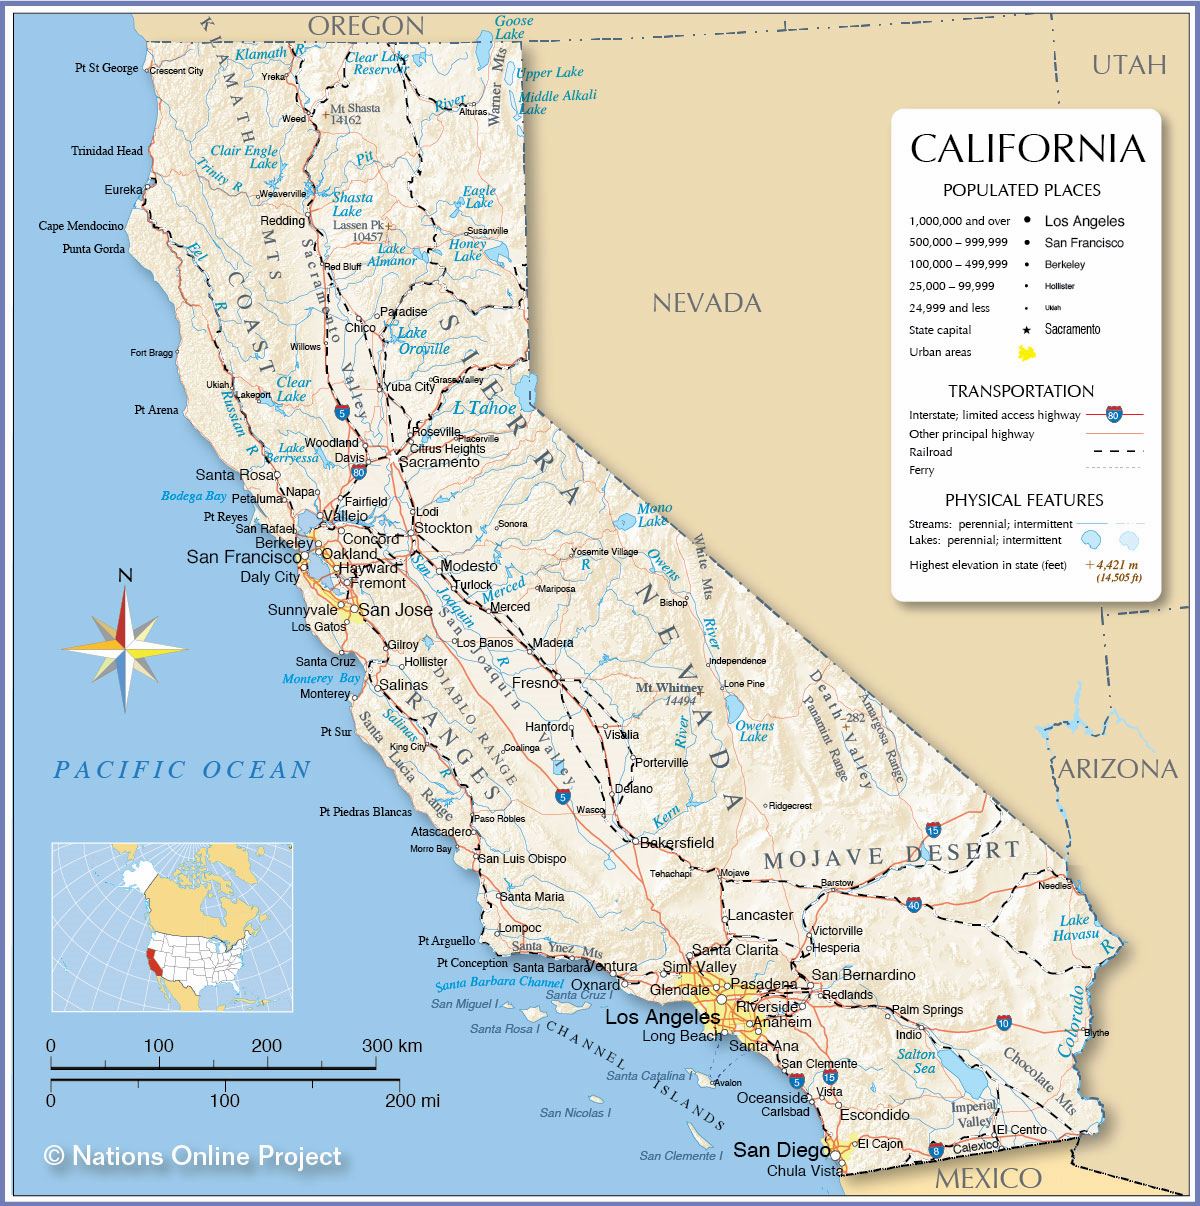 legibilidad-mirar-fijamente-floraci-n-estado-de-california-mapa-ventana